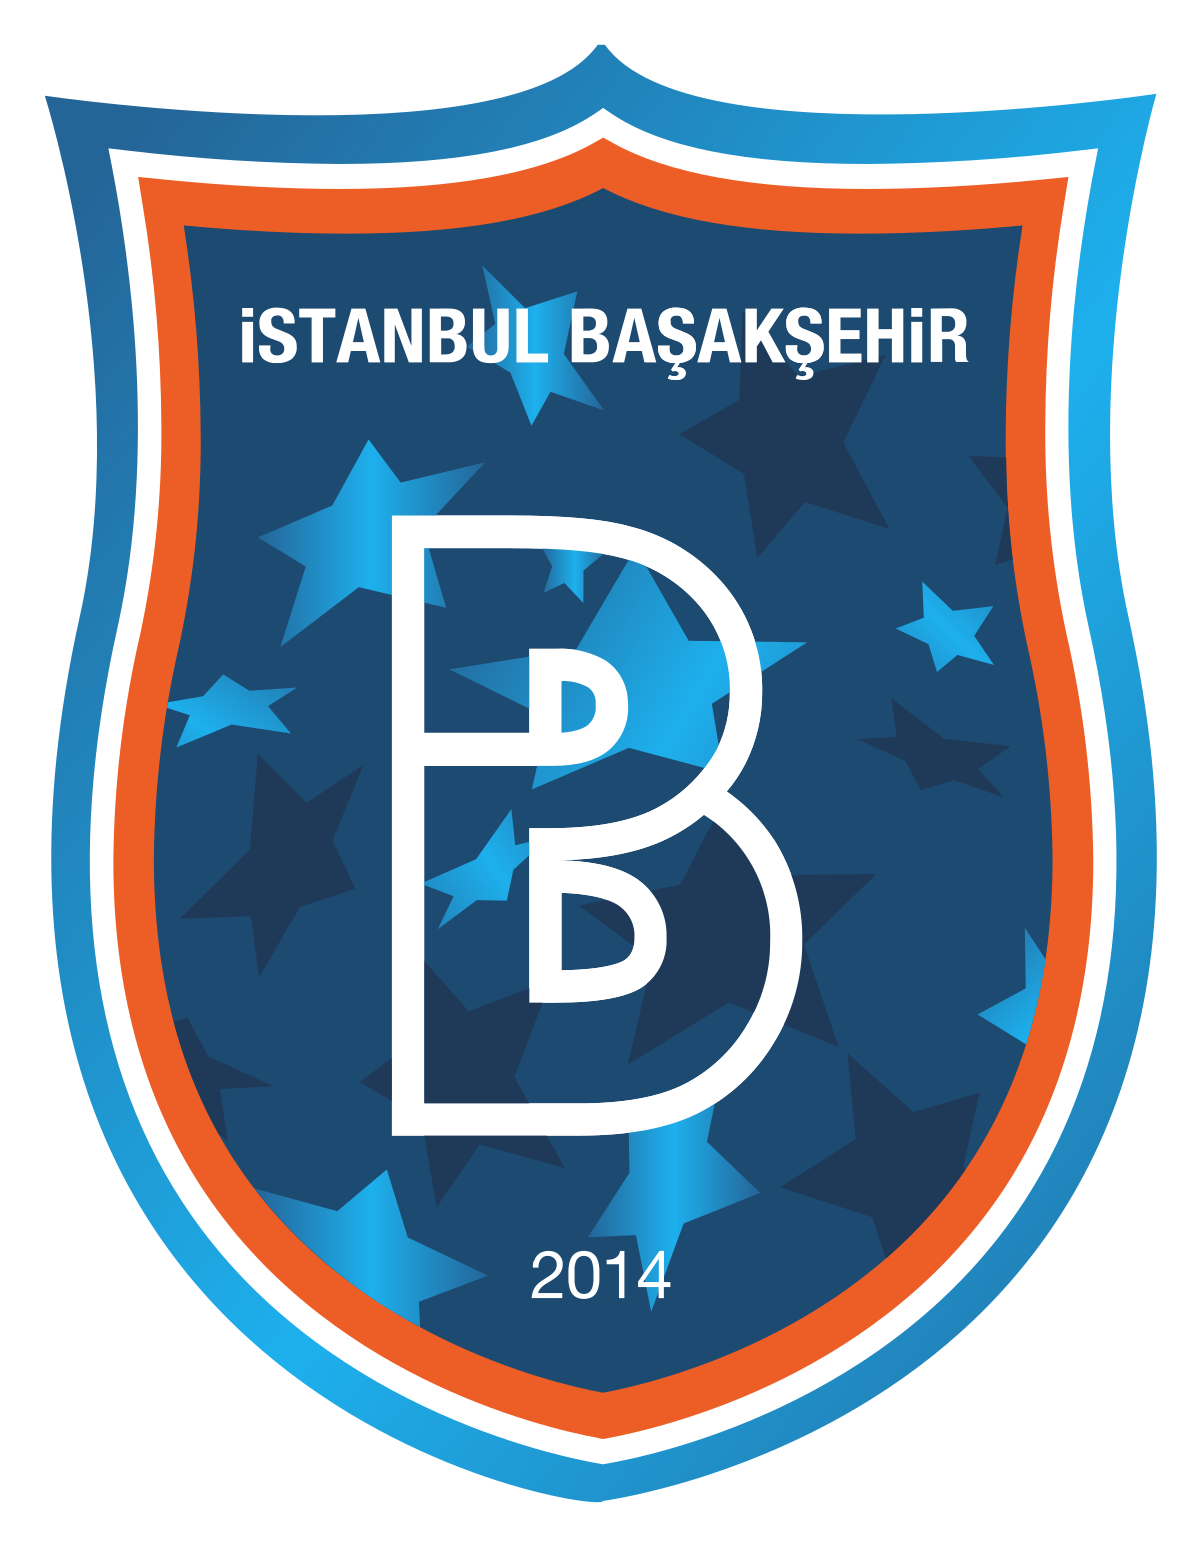 İstanbul Başakşehir Futbol Kulübü (IBFK)